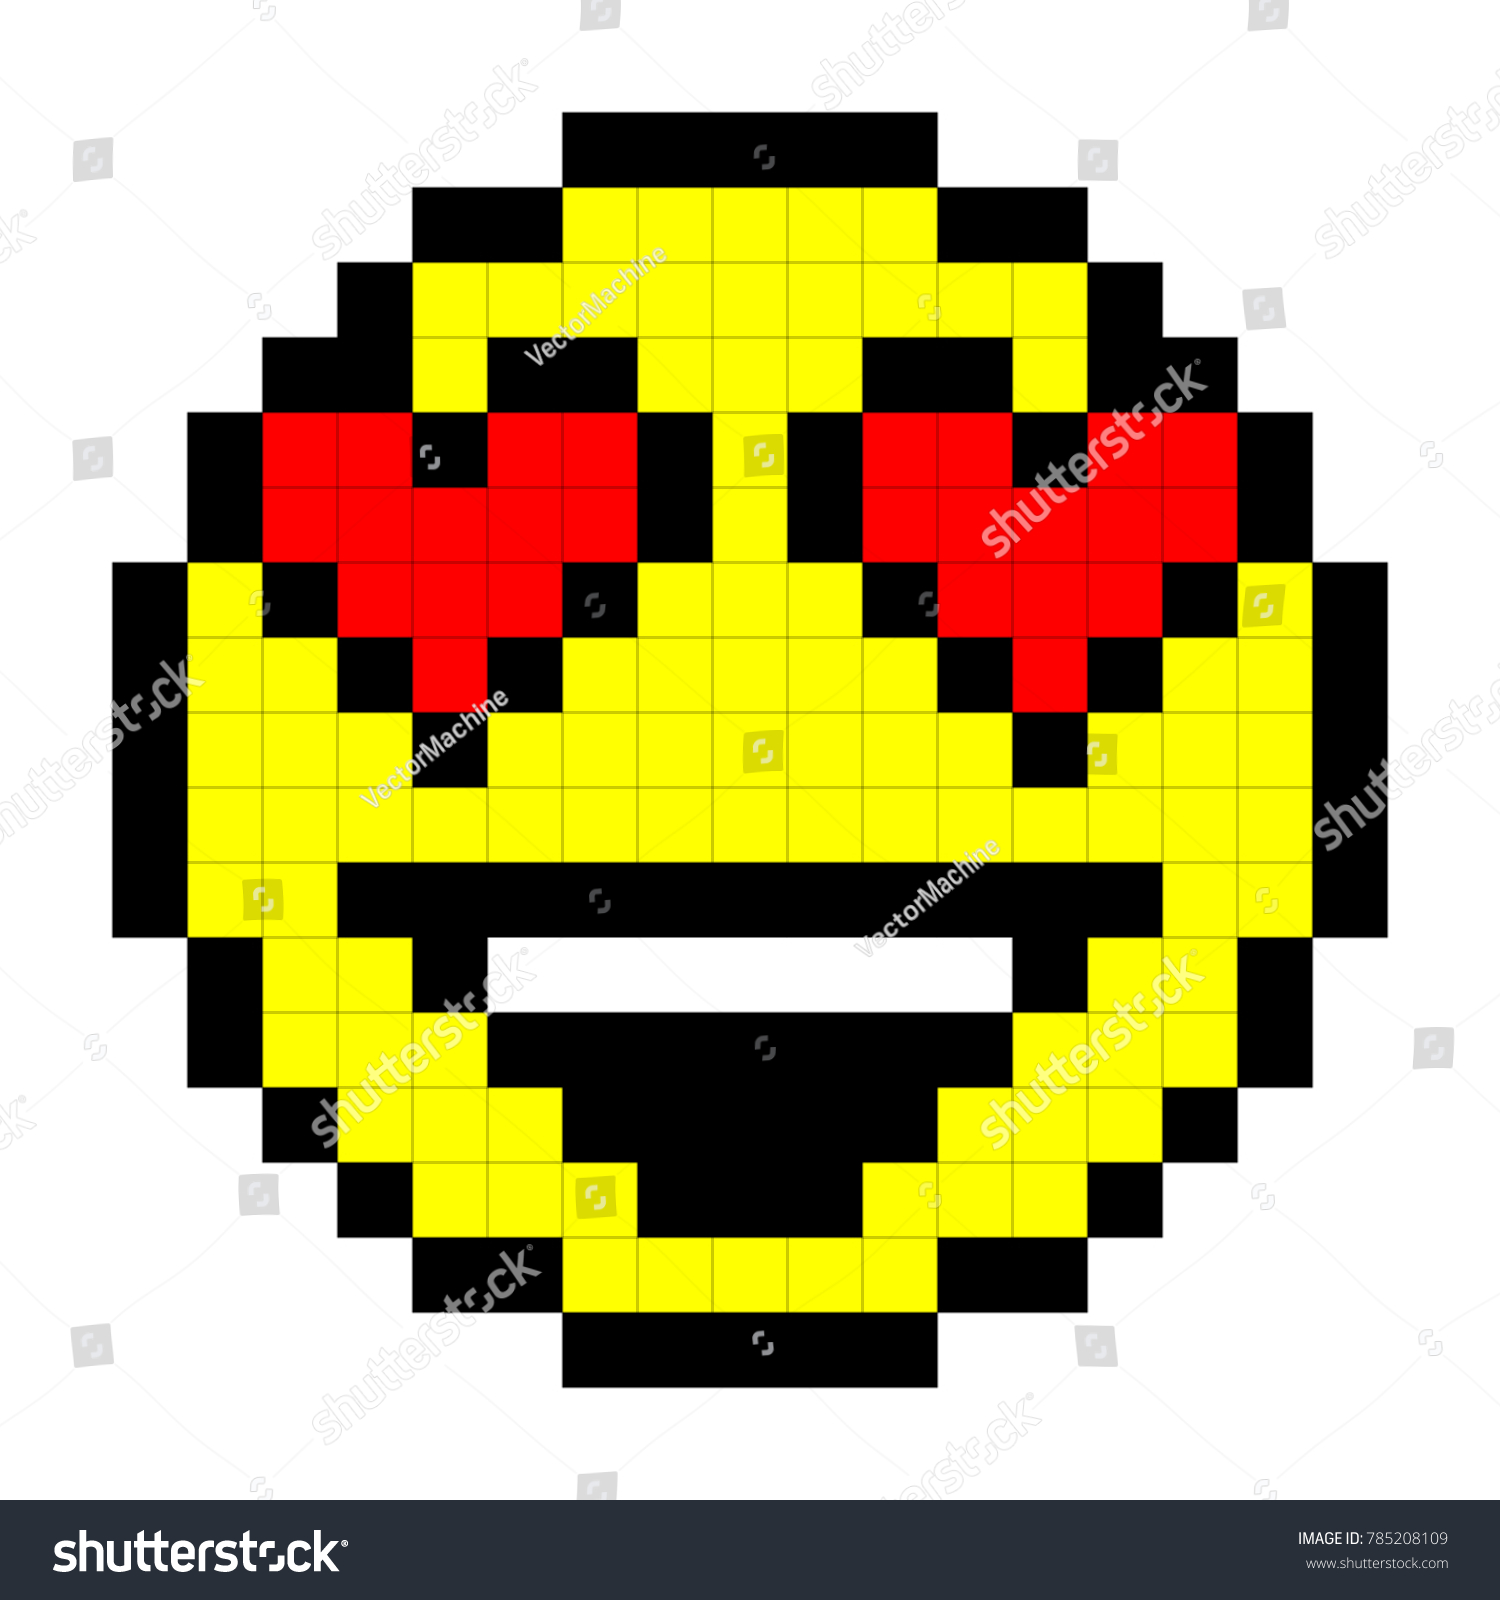 Image Vectorielle De Stock De Smiley Pixel Art Style On